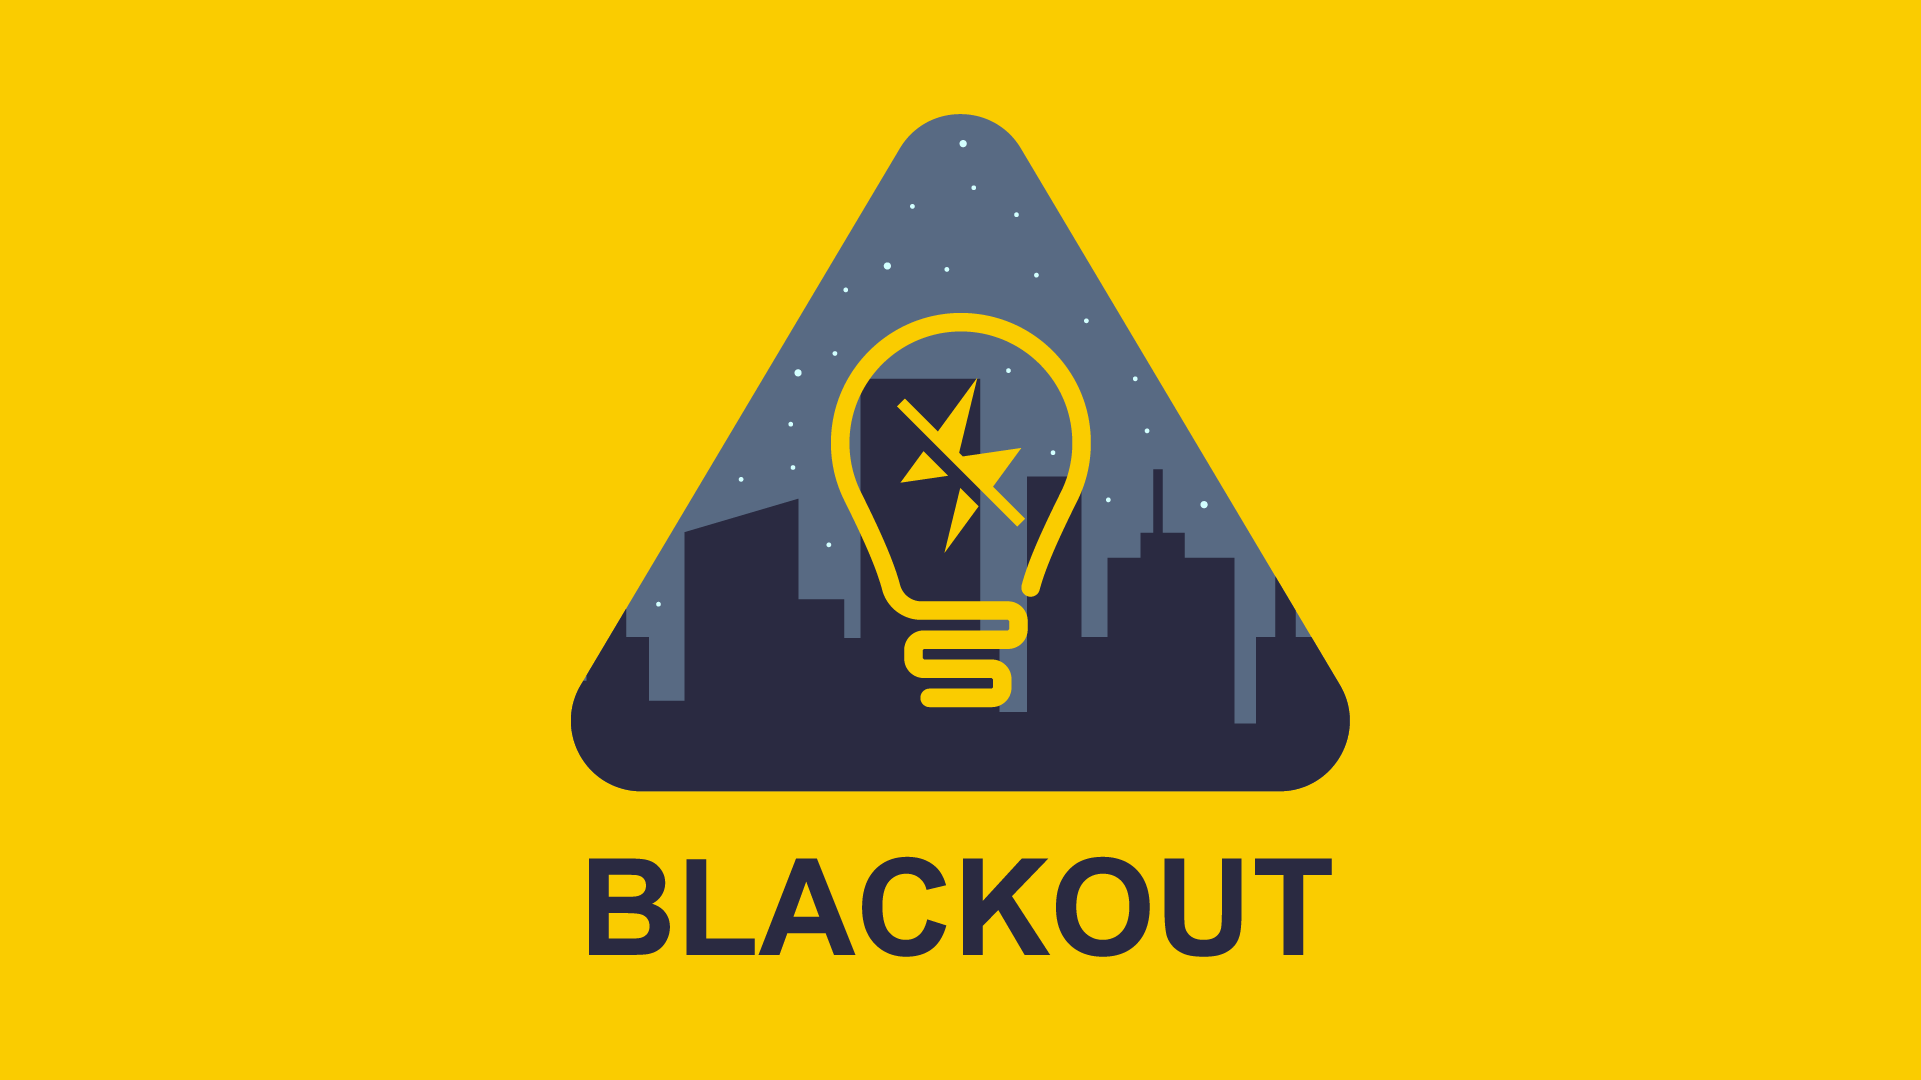 Energy blackouts. Should businesses prepare?